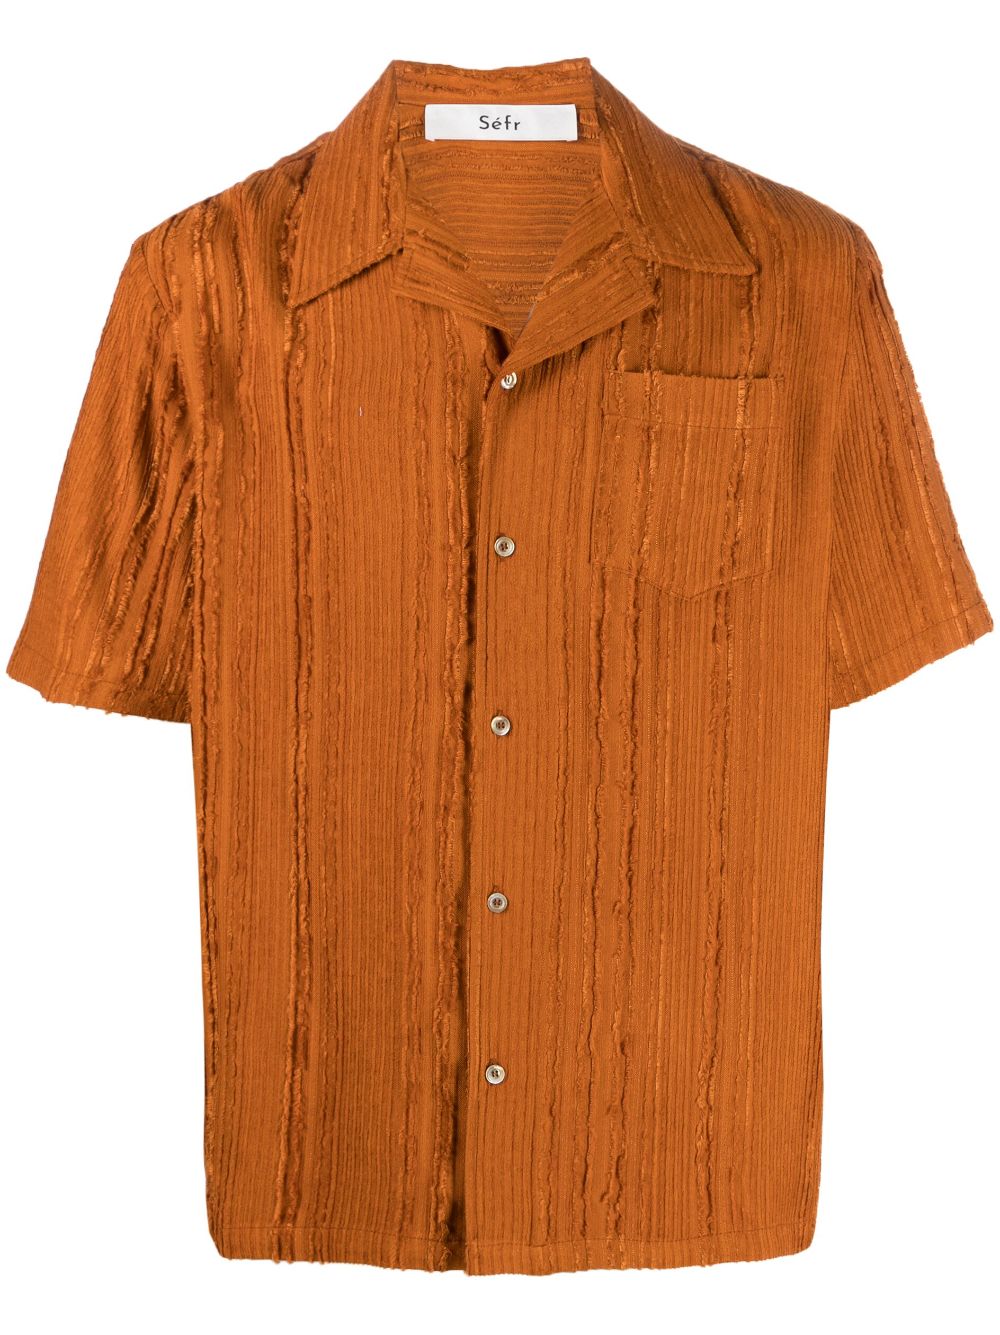 Séfr - Dalian striped textured-finish shirt